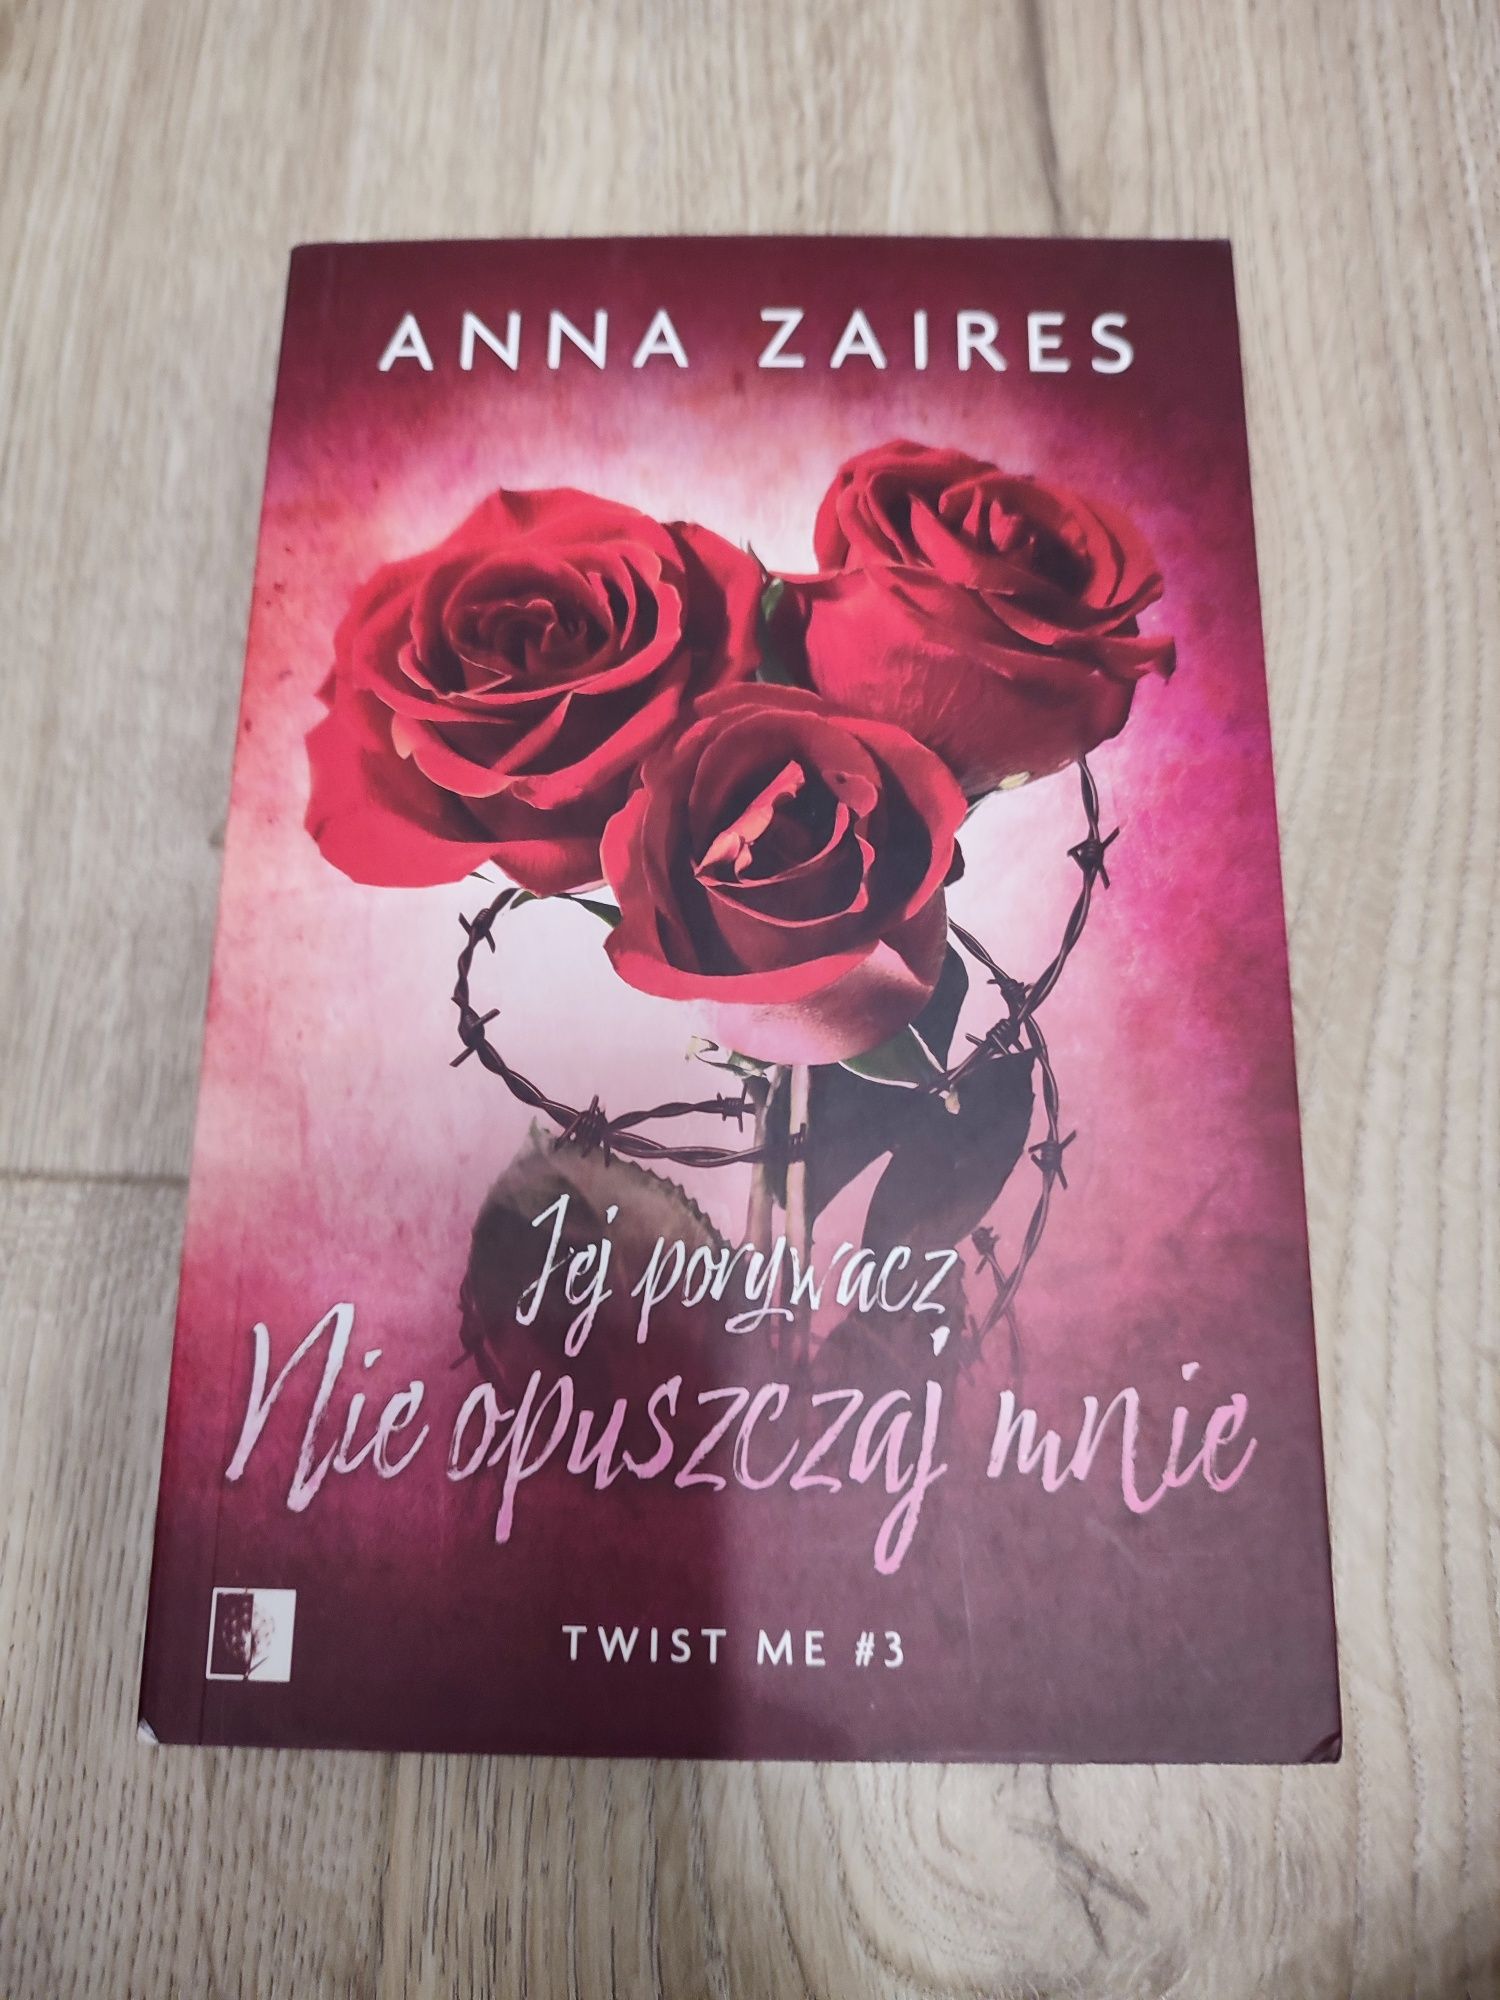 Anna Zaires -" jej porywacz ,nie opusczaj mnie "-(cz:3)